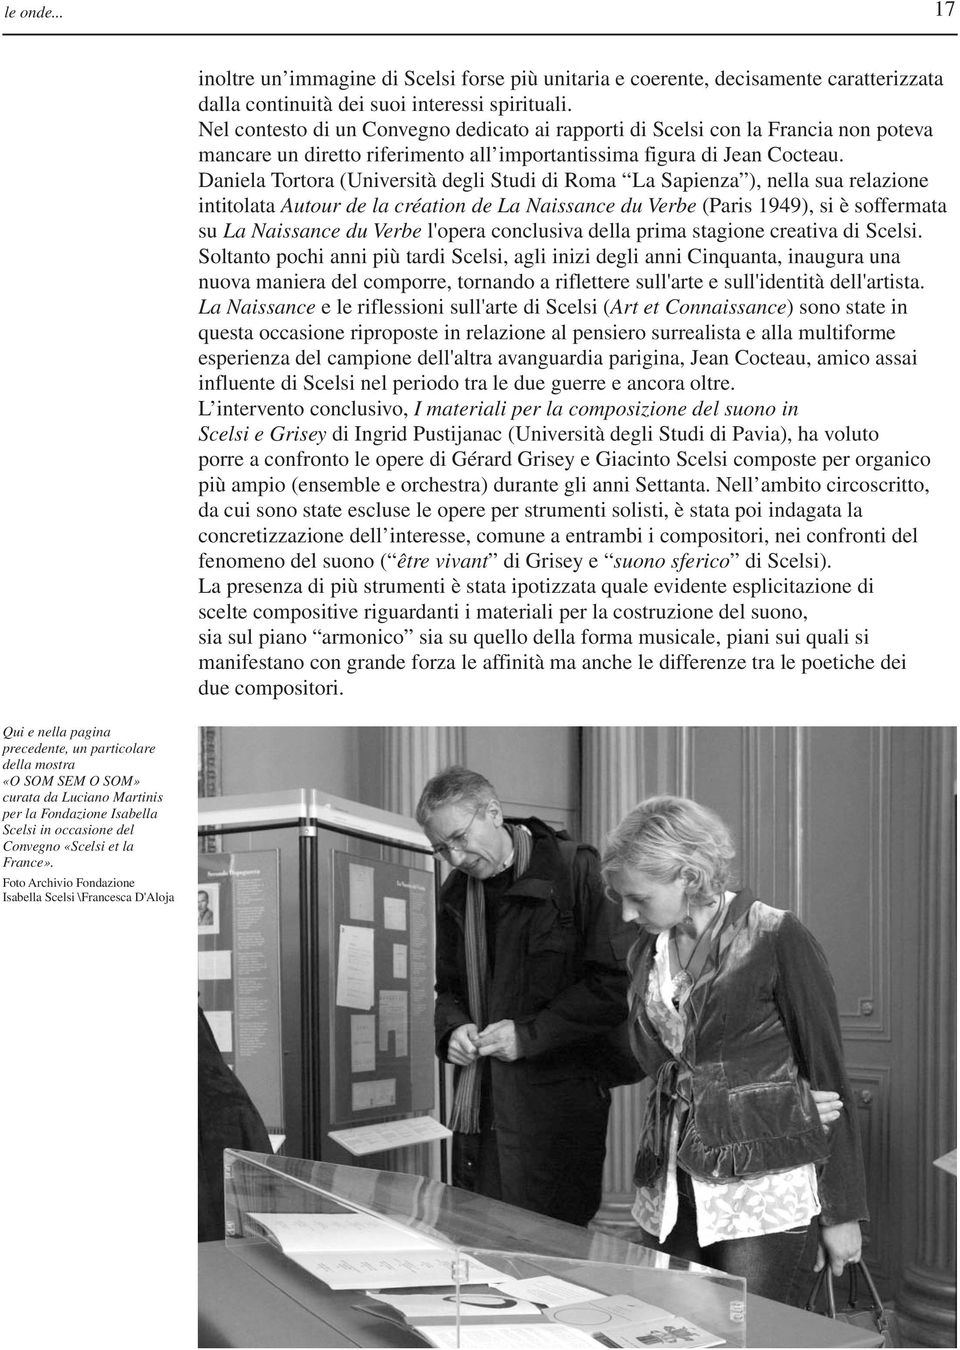 Daniela Tortora (Università degli Studi di Roma La Sapienza ), nella sua relazione intitolata Autour de la création de La Naissance du Verbe (Paris 1949), si è soffermata su La Naissance du Verbe